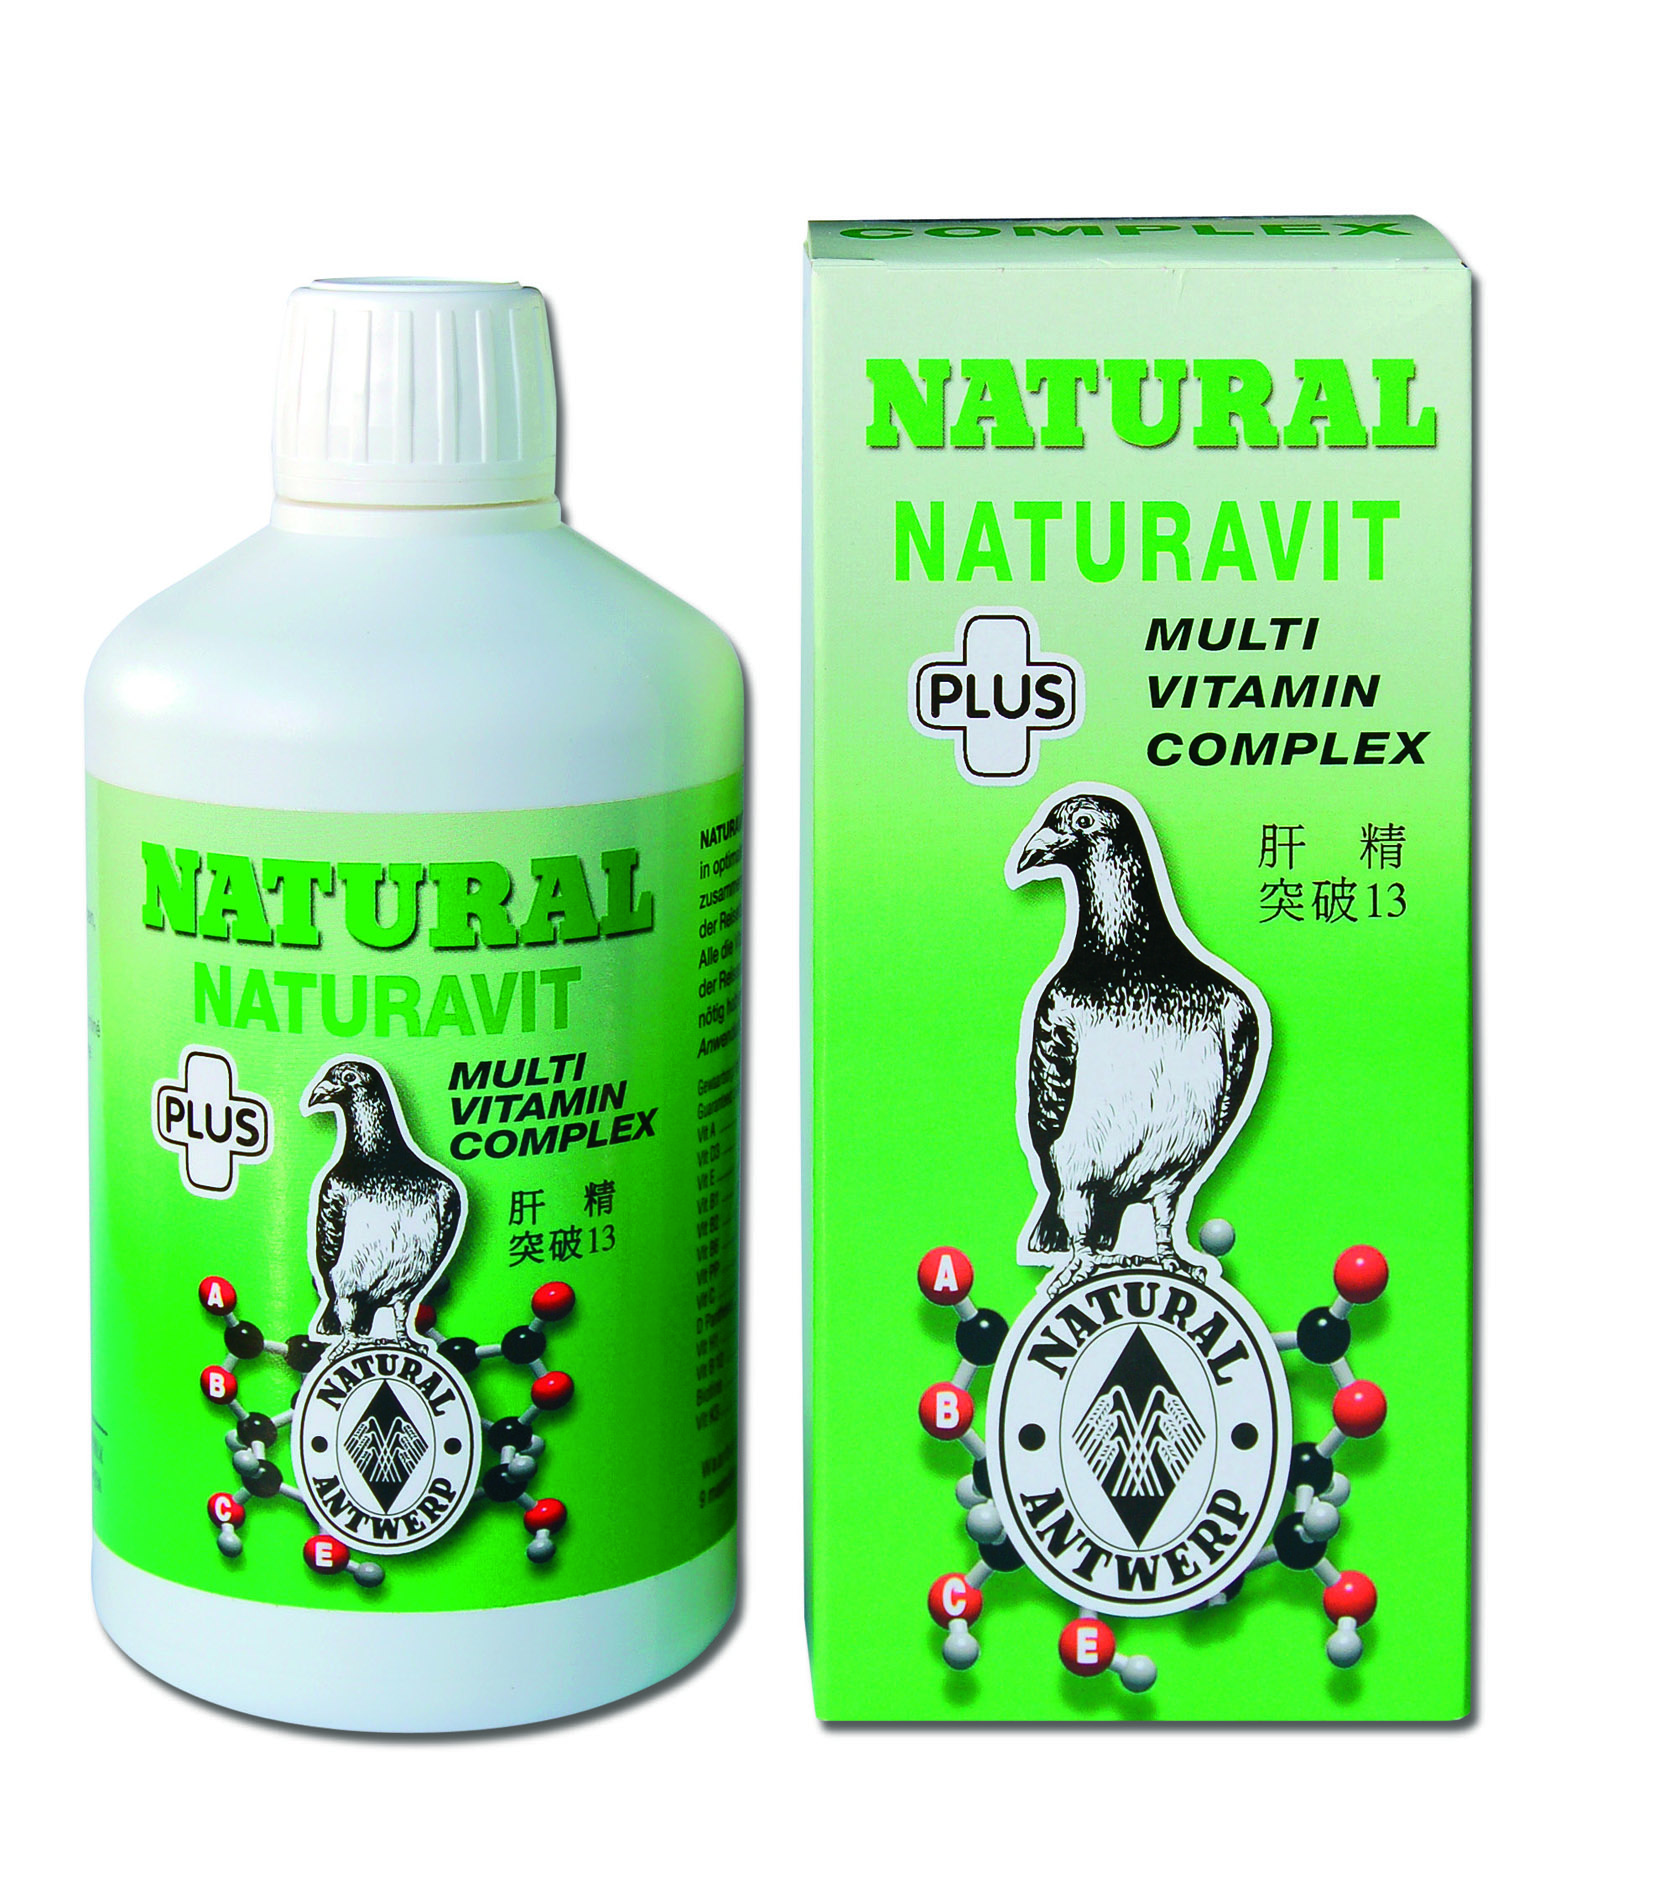 Natural naturavit plus - Product shot